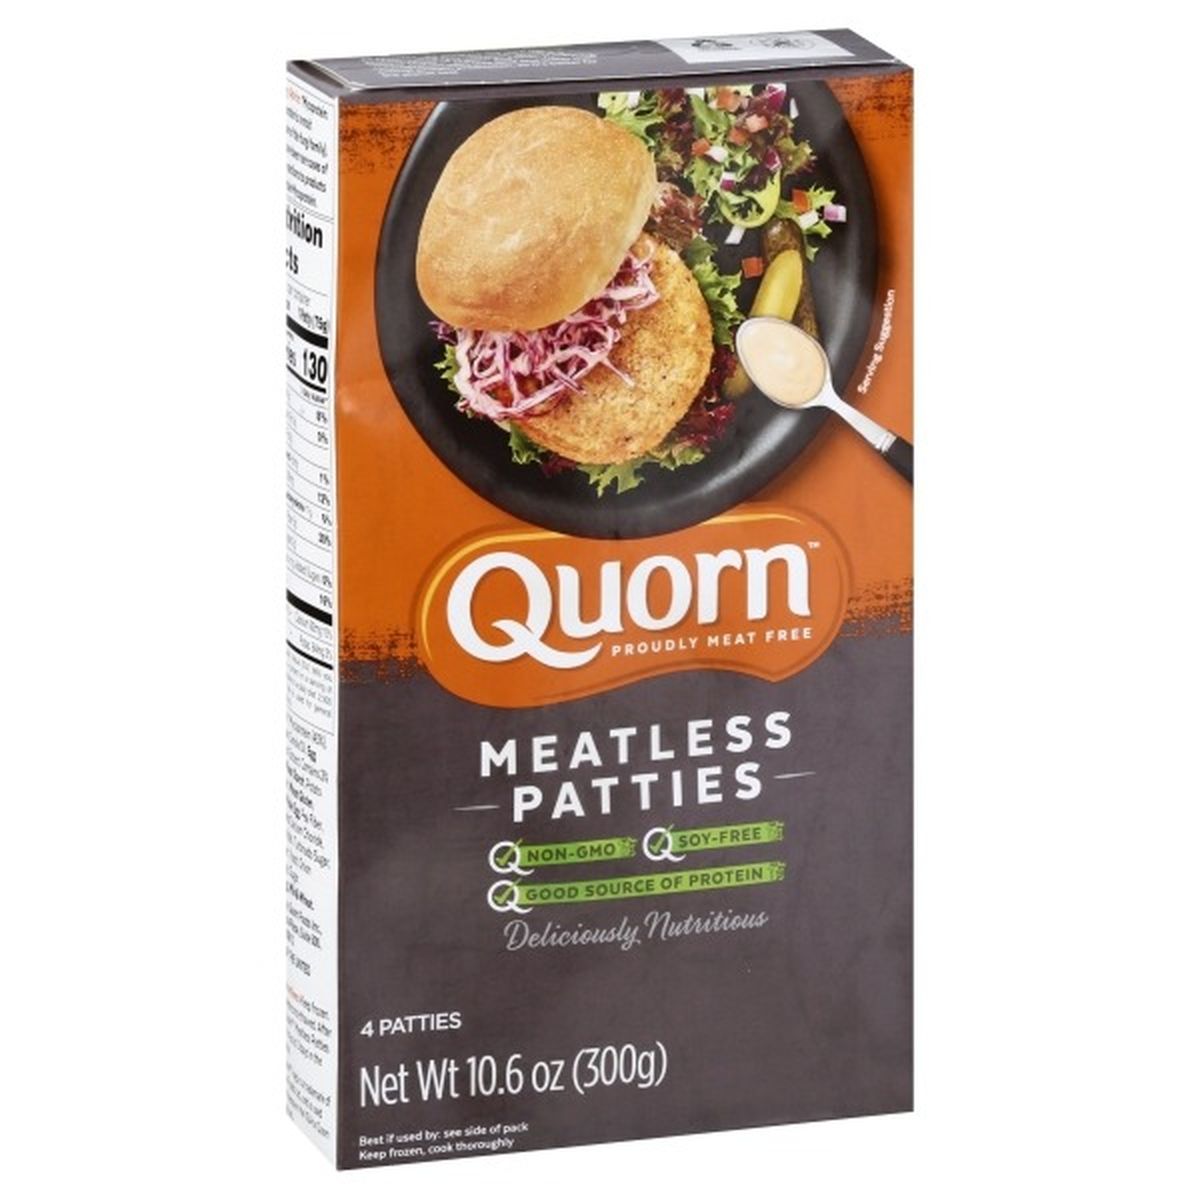 Calories in Quorn Patties, Meatless